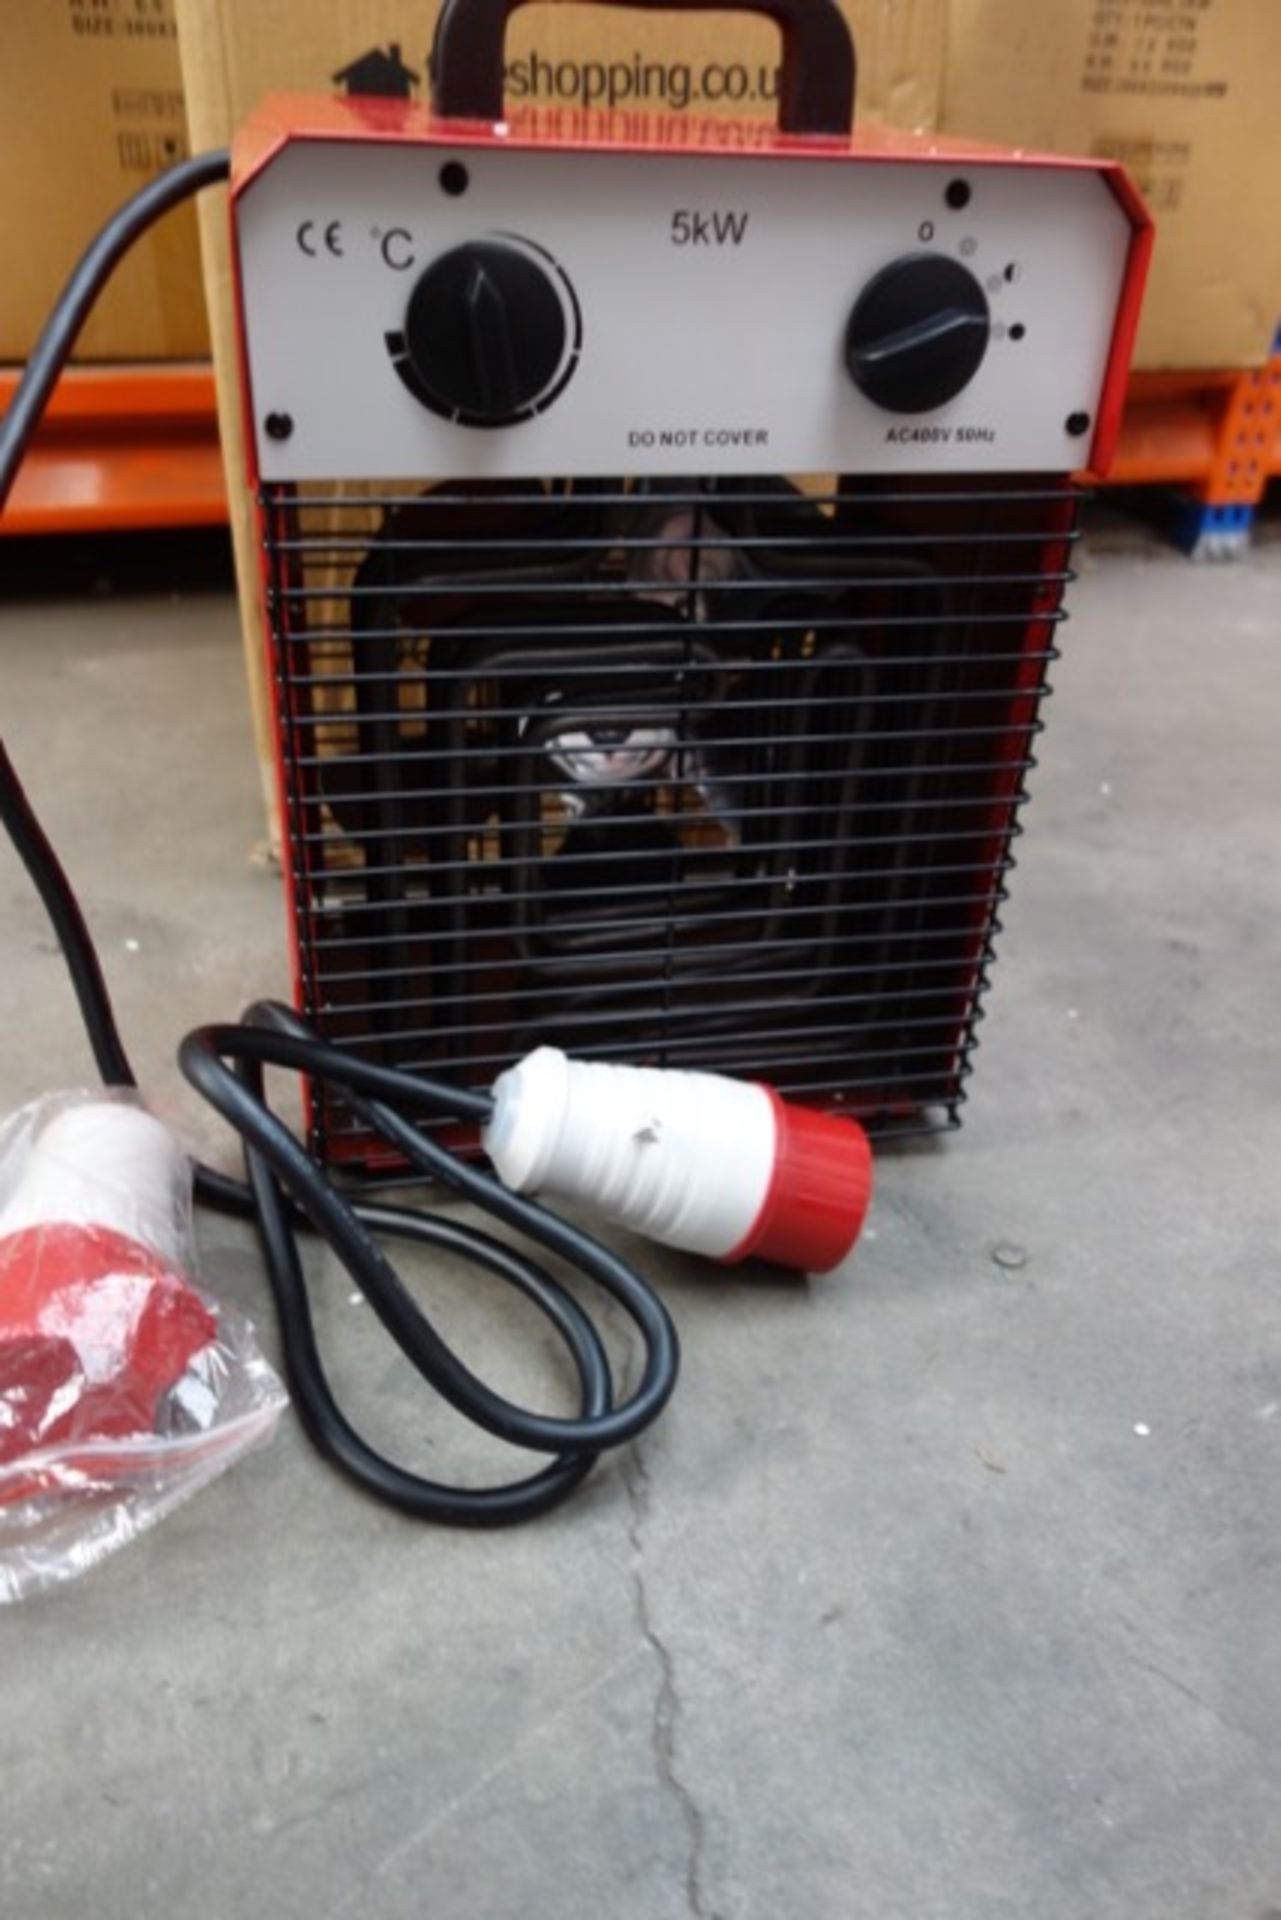 1 x 5KW Industrial Fan Heater. 400v-50Hz 5KW. Very high heat output. RRP £199.99. - Bild 2 aus 2